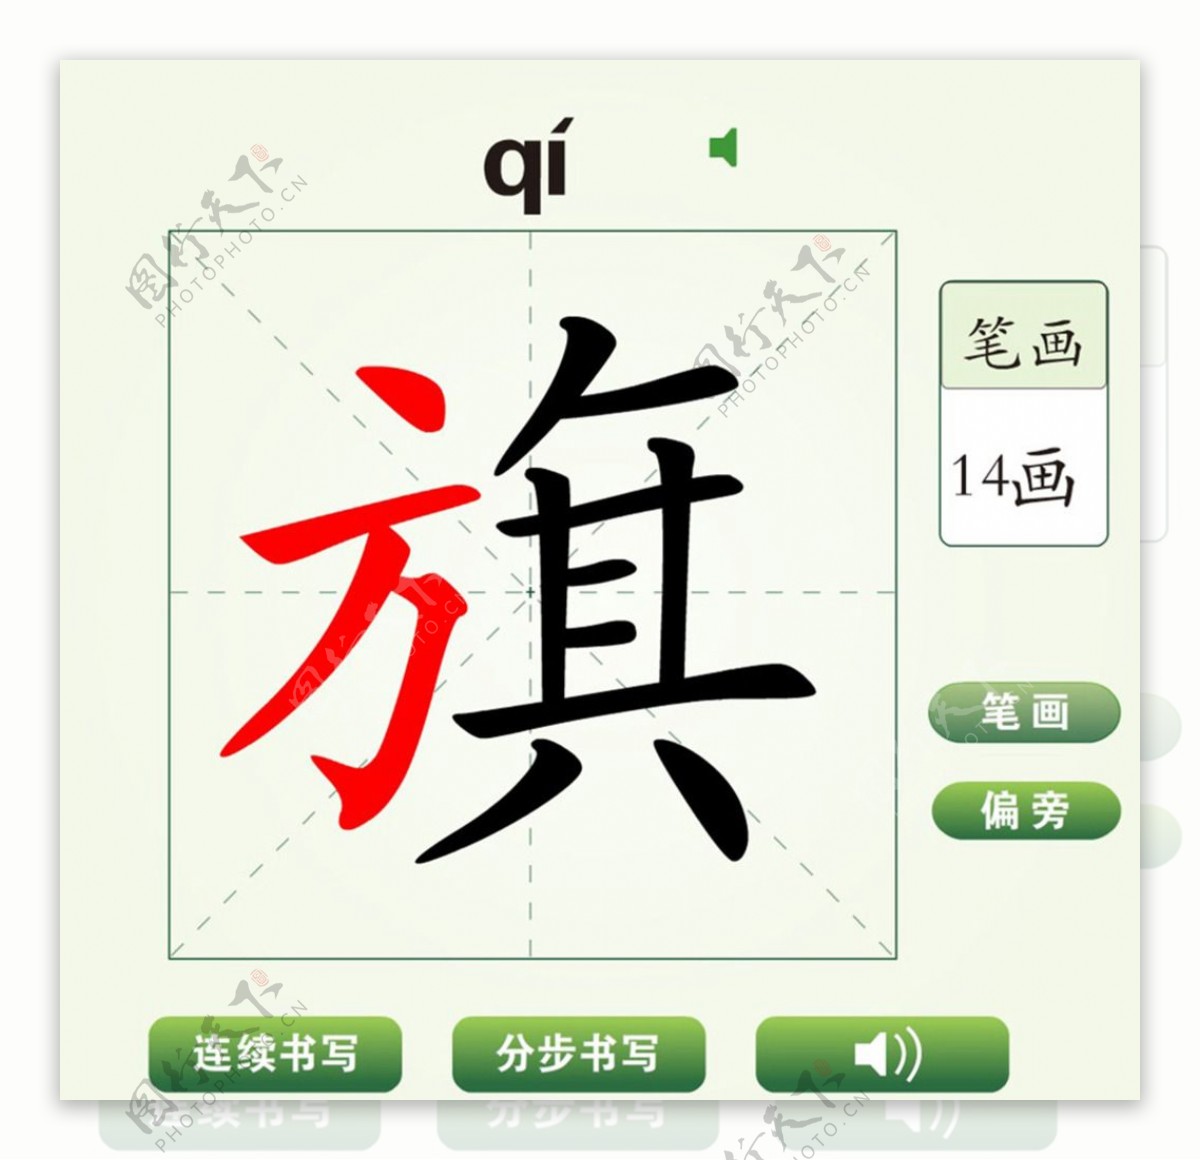 中国汉字旗字笔画教学动画视频